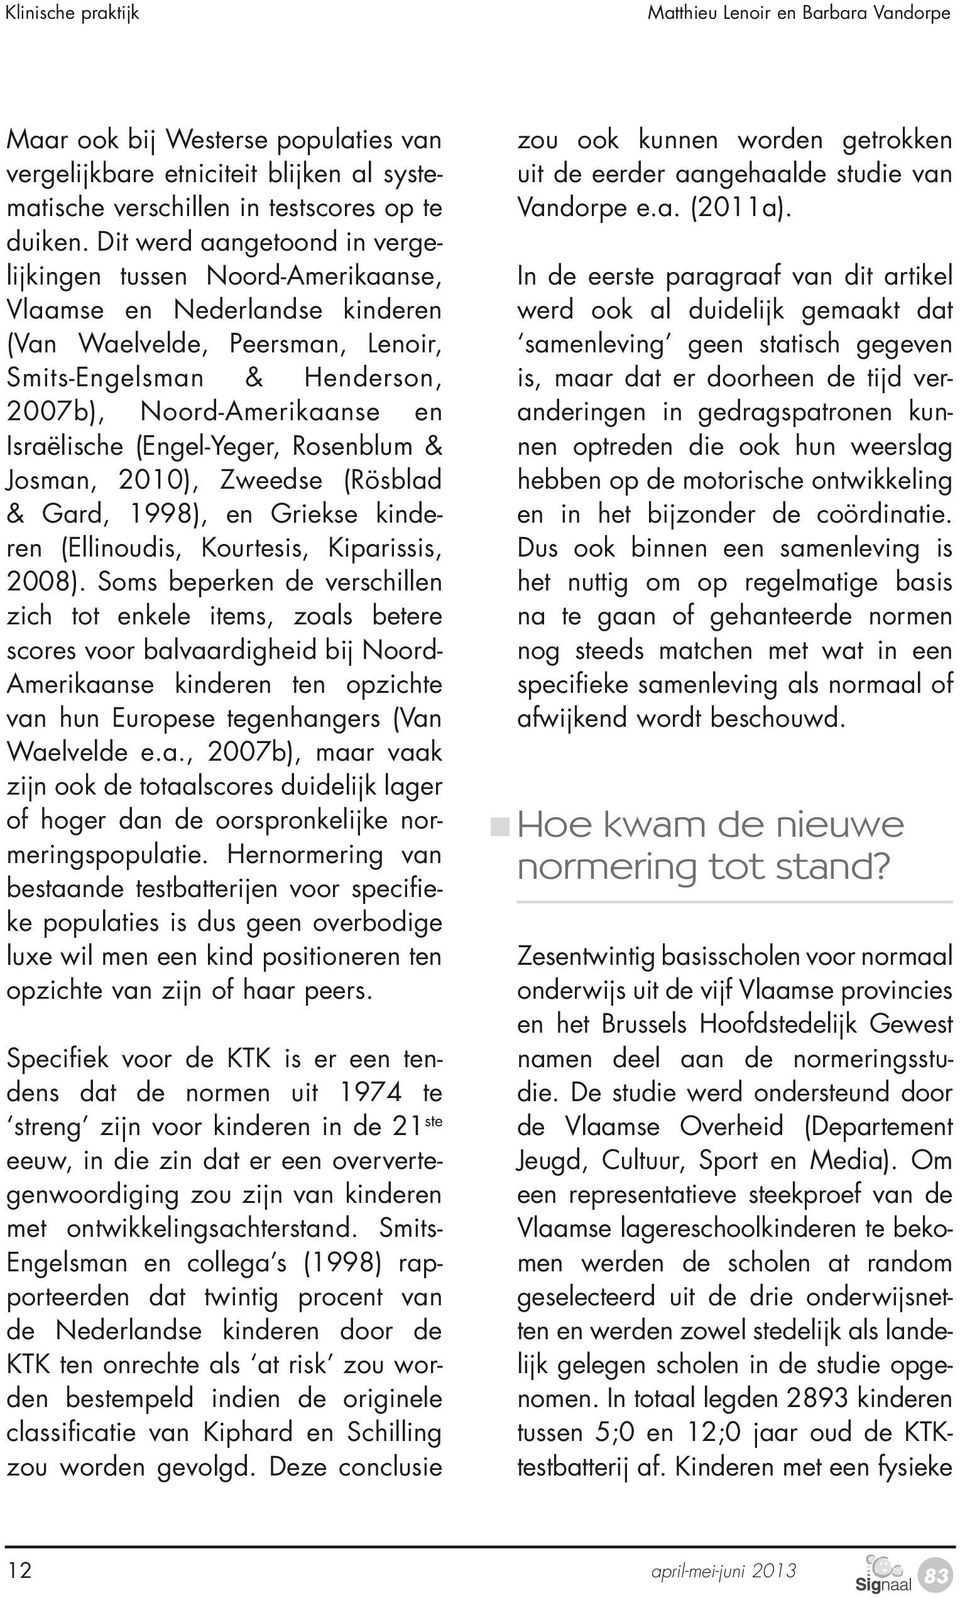 (Engel-Yeger, Rosenblum & Josman, 2010), Zweedse (Rösblad & Gard, 1998), en Griekse kinderen (Ellinoudis, Kourtesis, Kiparissis, 2008).